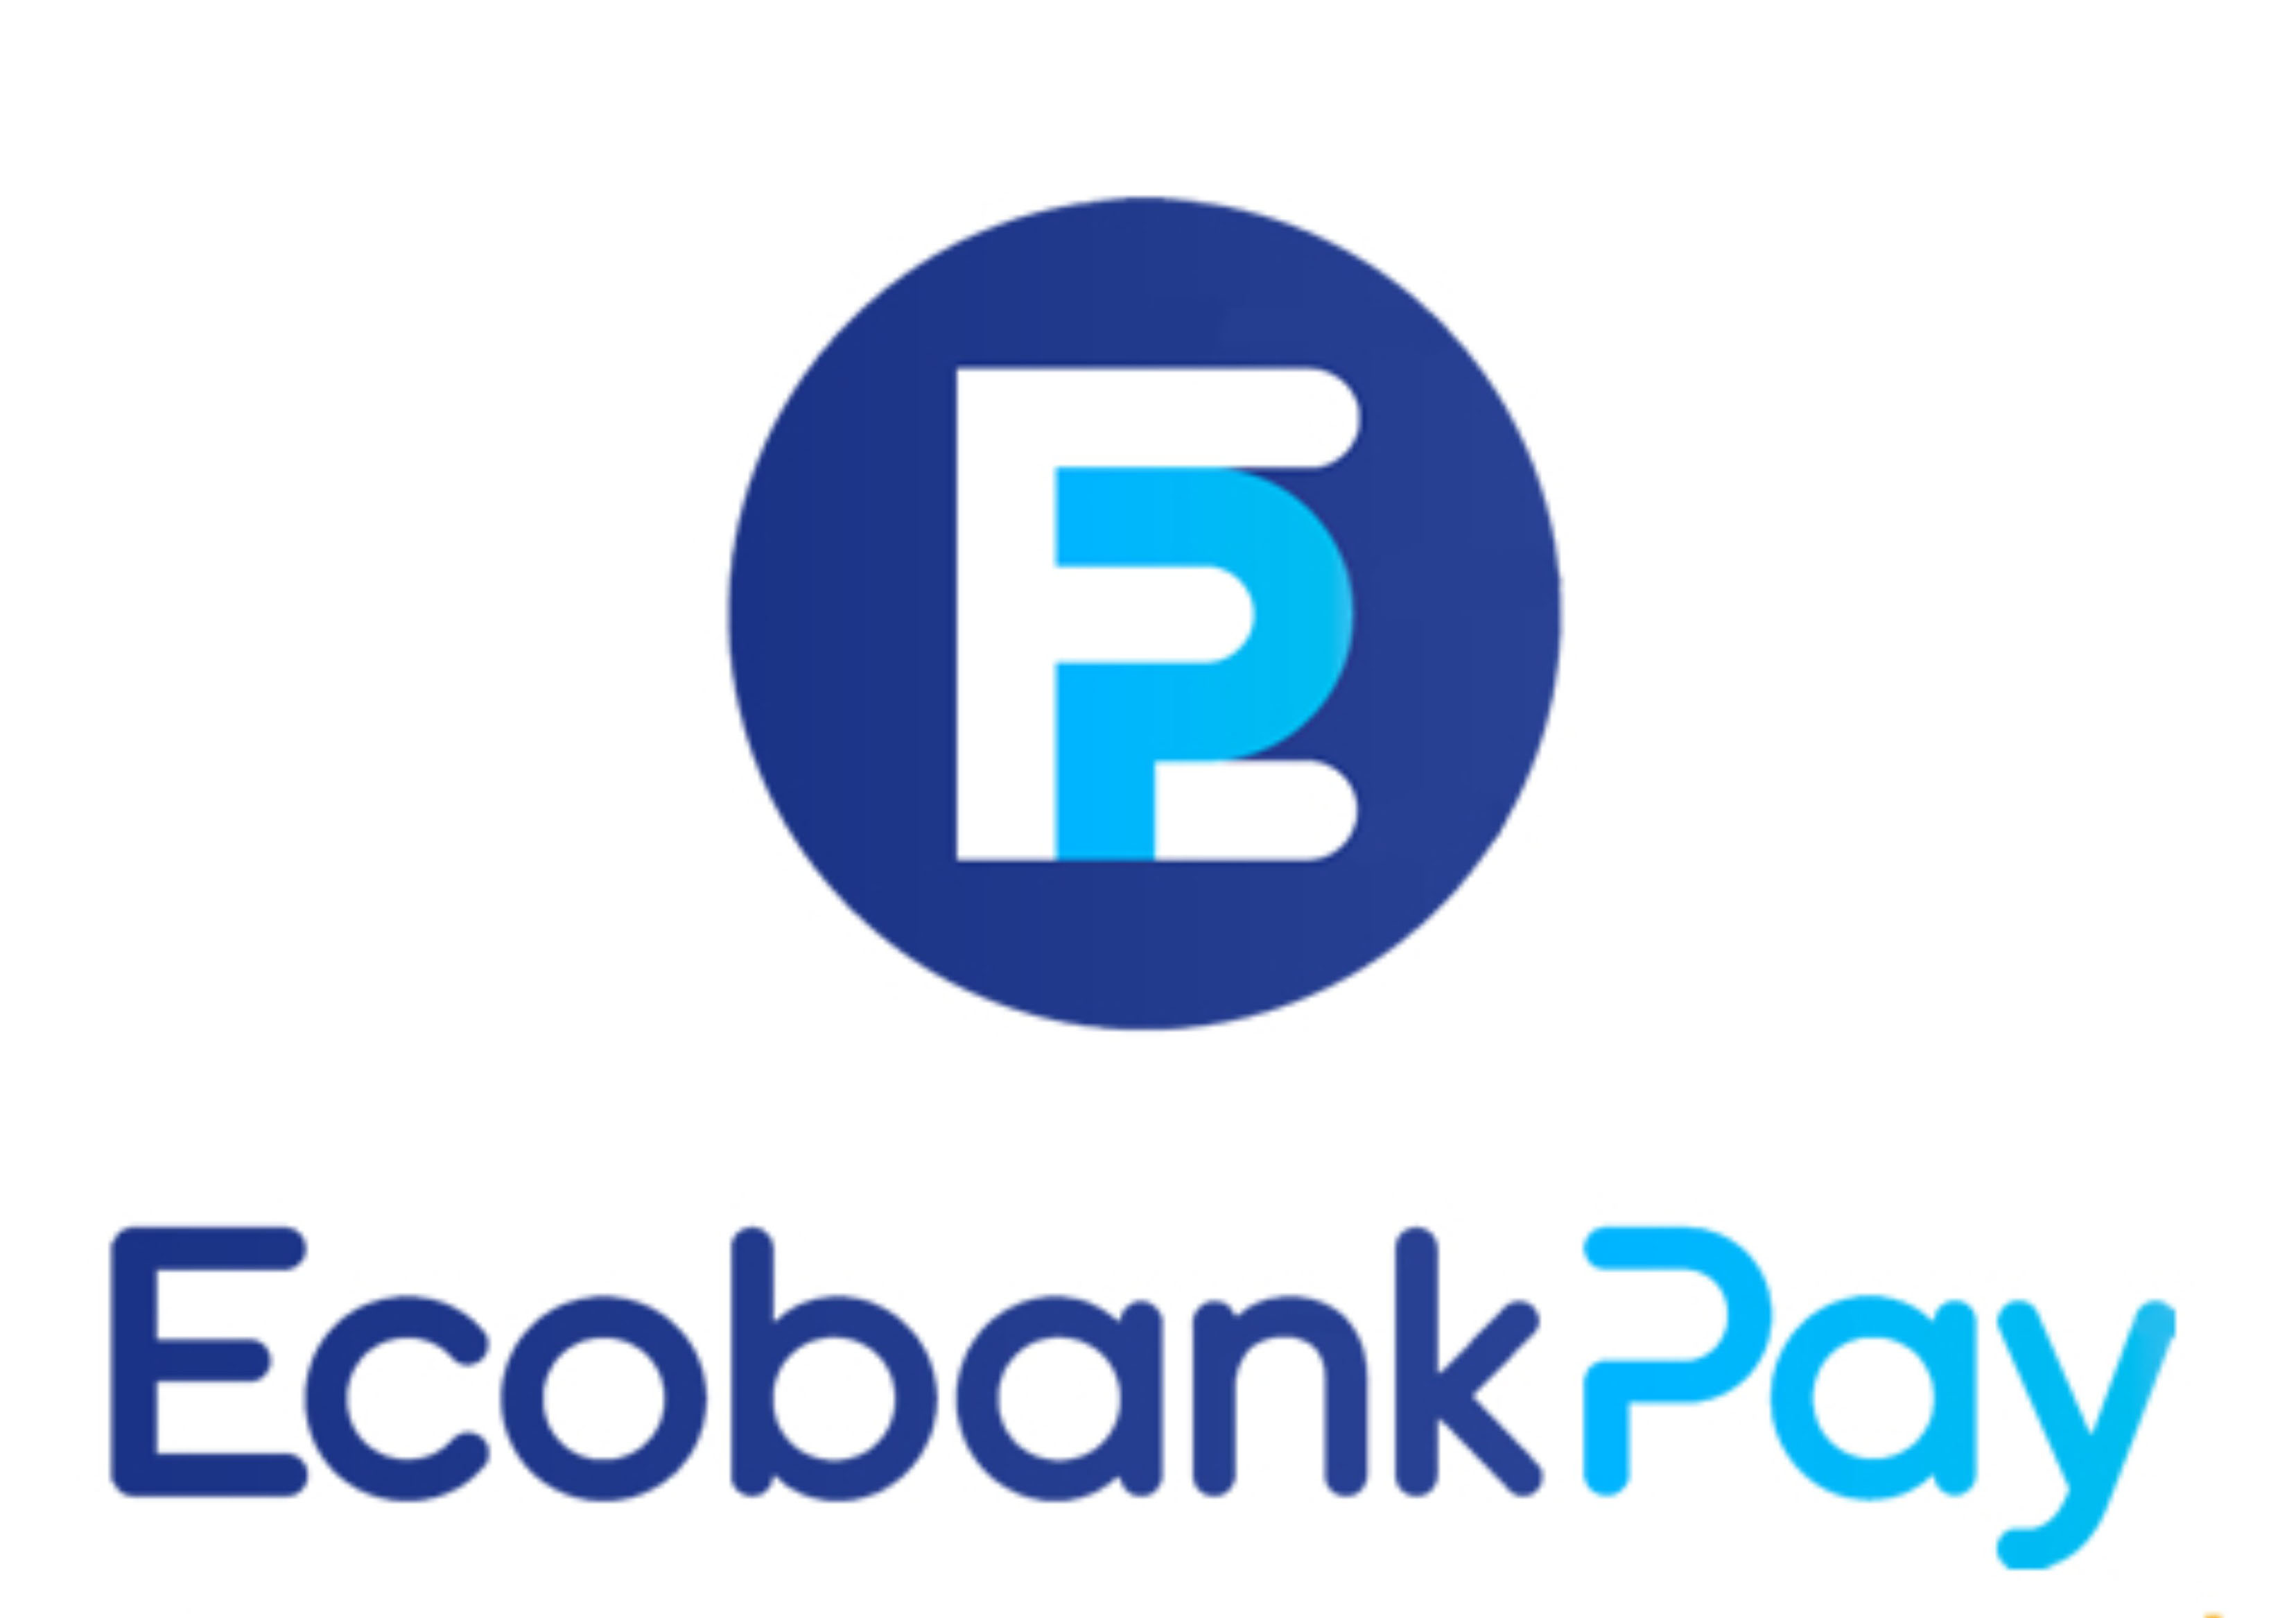 EcobankPay